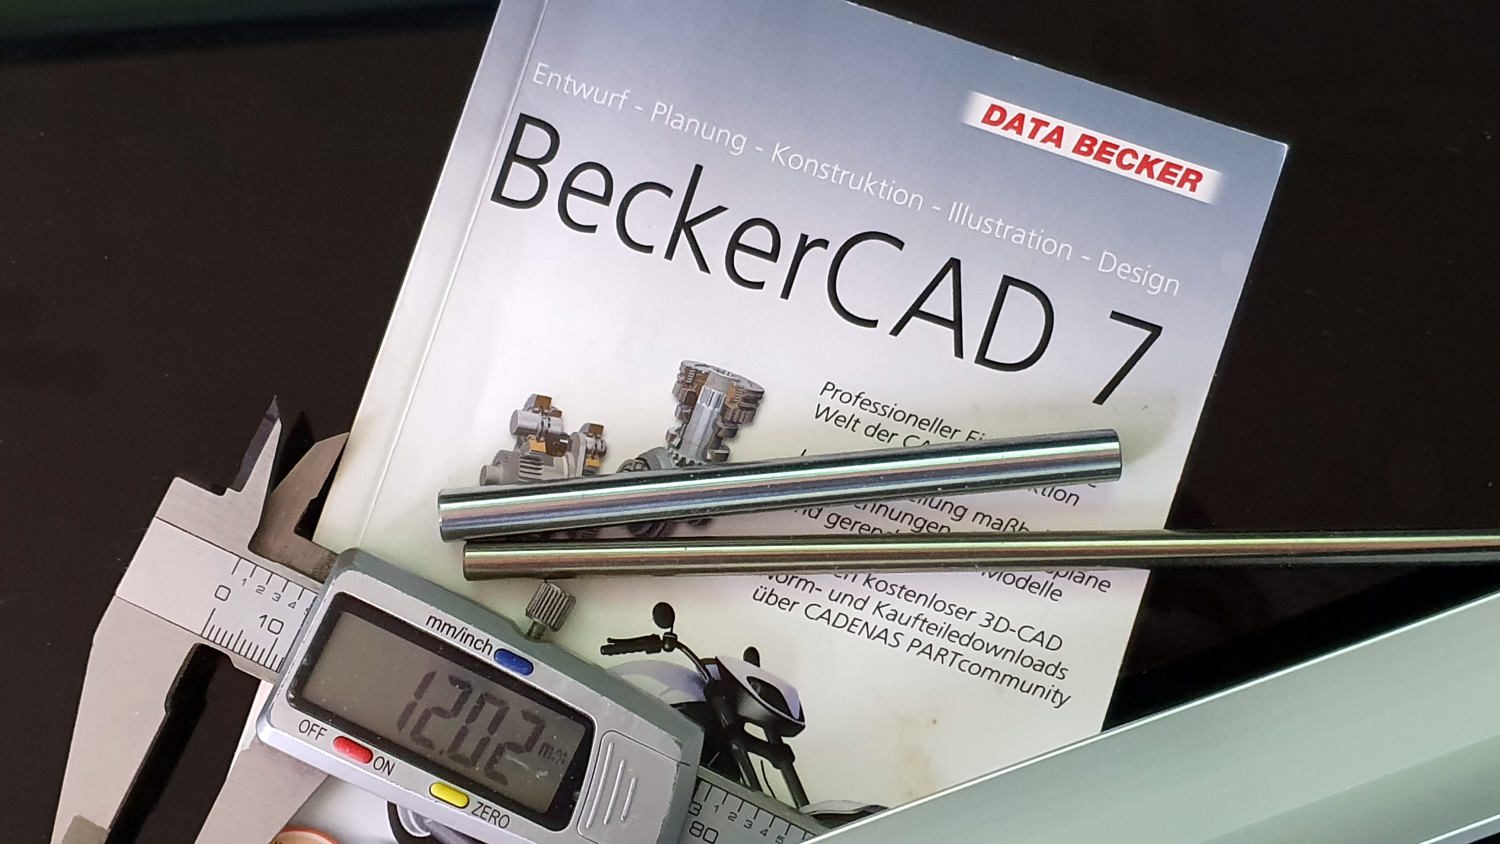 CAD Software BeckerCad von DataSolid